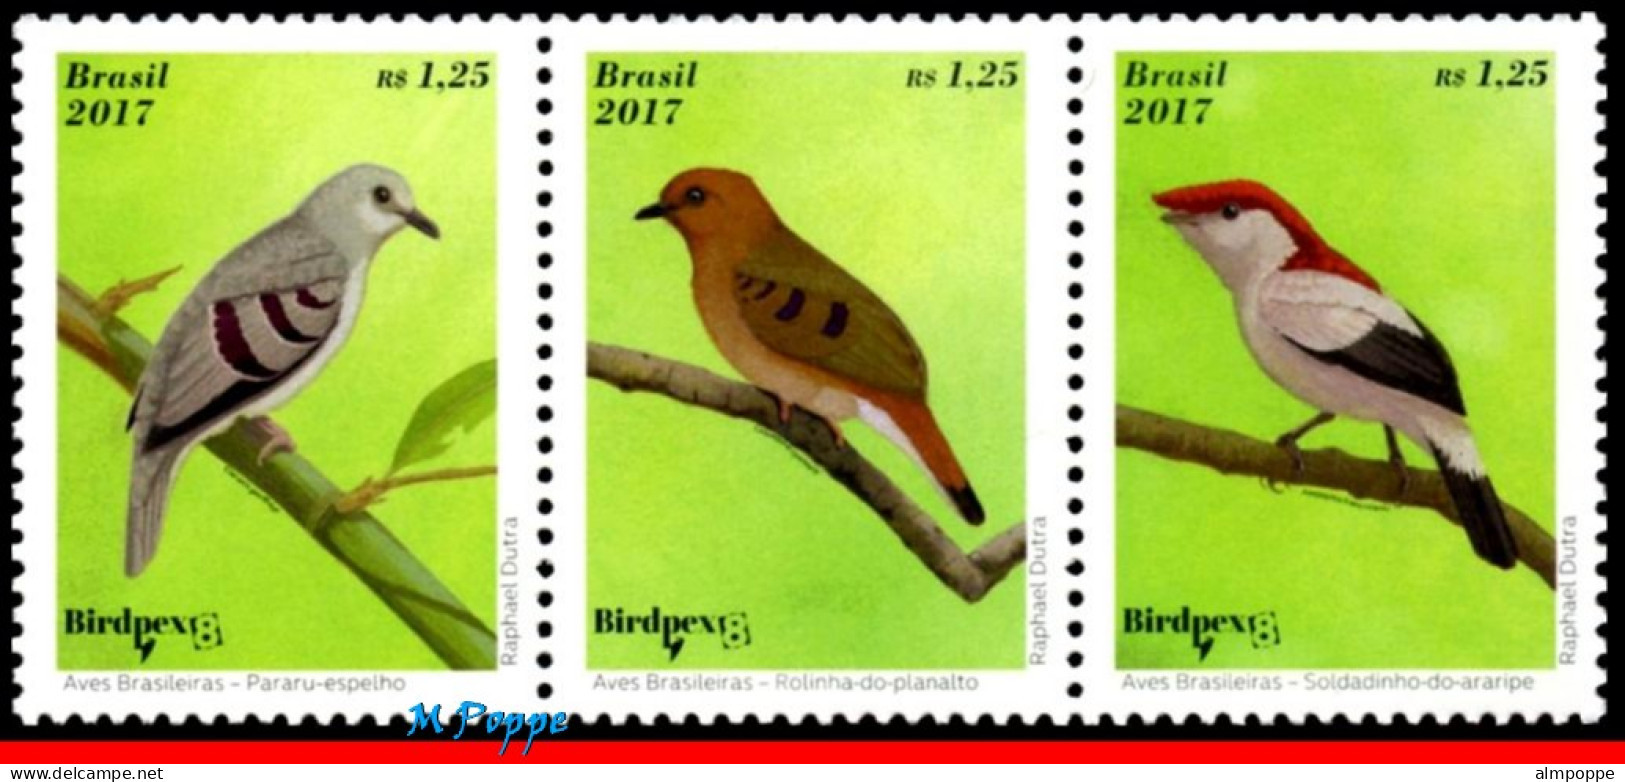 Ref. BR-V2017-04-4 BRAZIL 2017 - BRAZILIAN BIRDS,BIRDPEX 8, ENDANGERED, SHEET MNH, BIRDS 15V - Blocs-feuillets